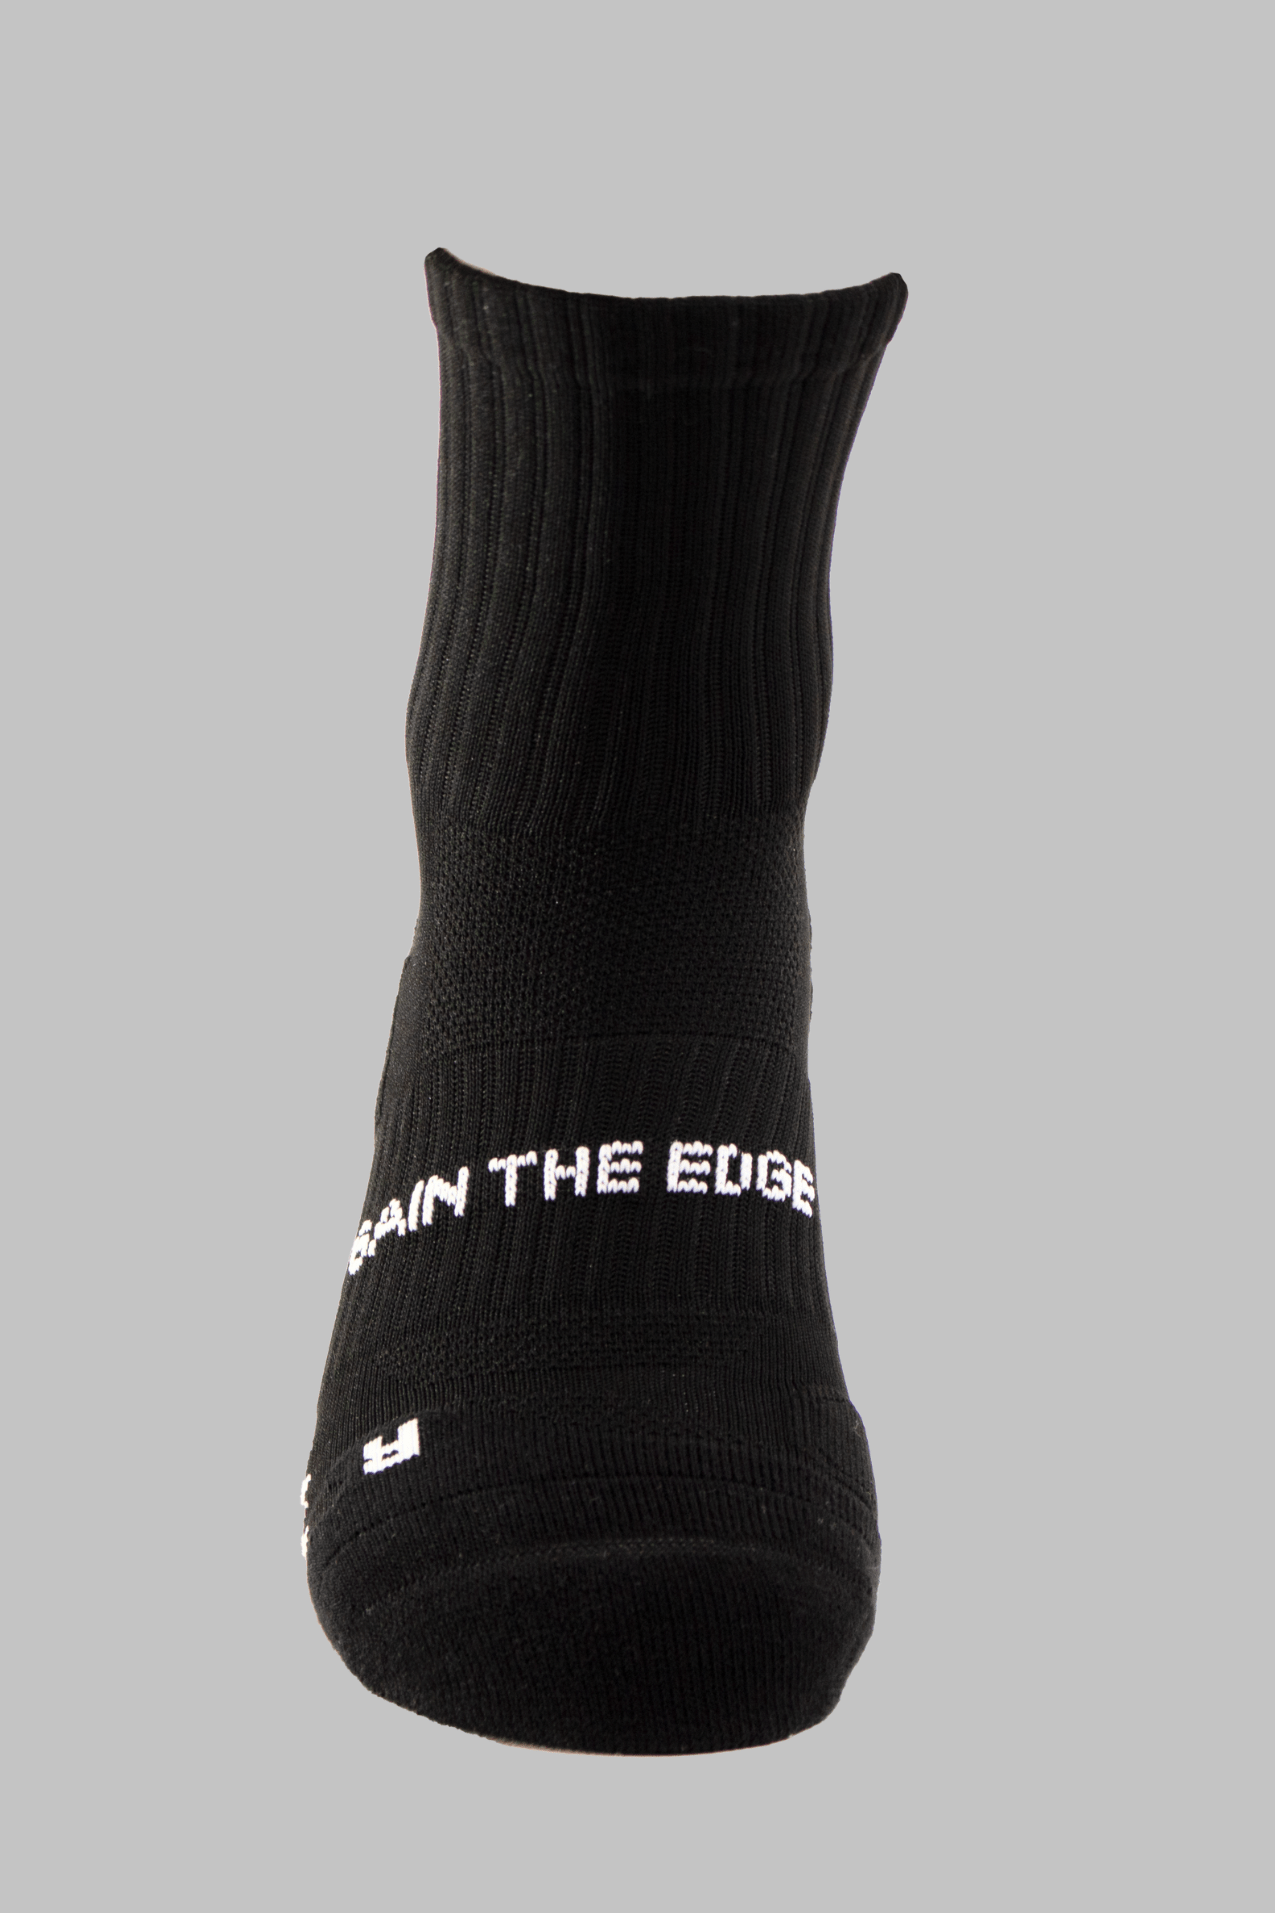 Running Socks Quarter Length - Black - Gain The Edge Official